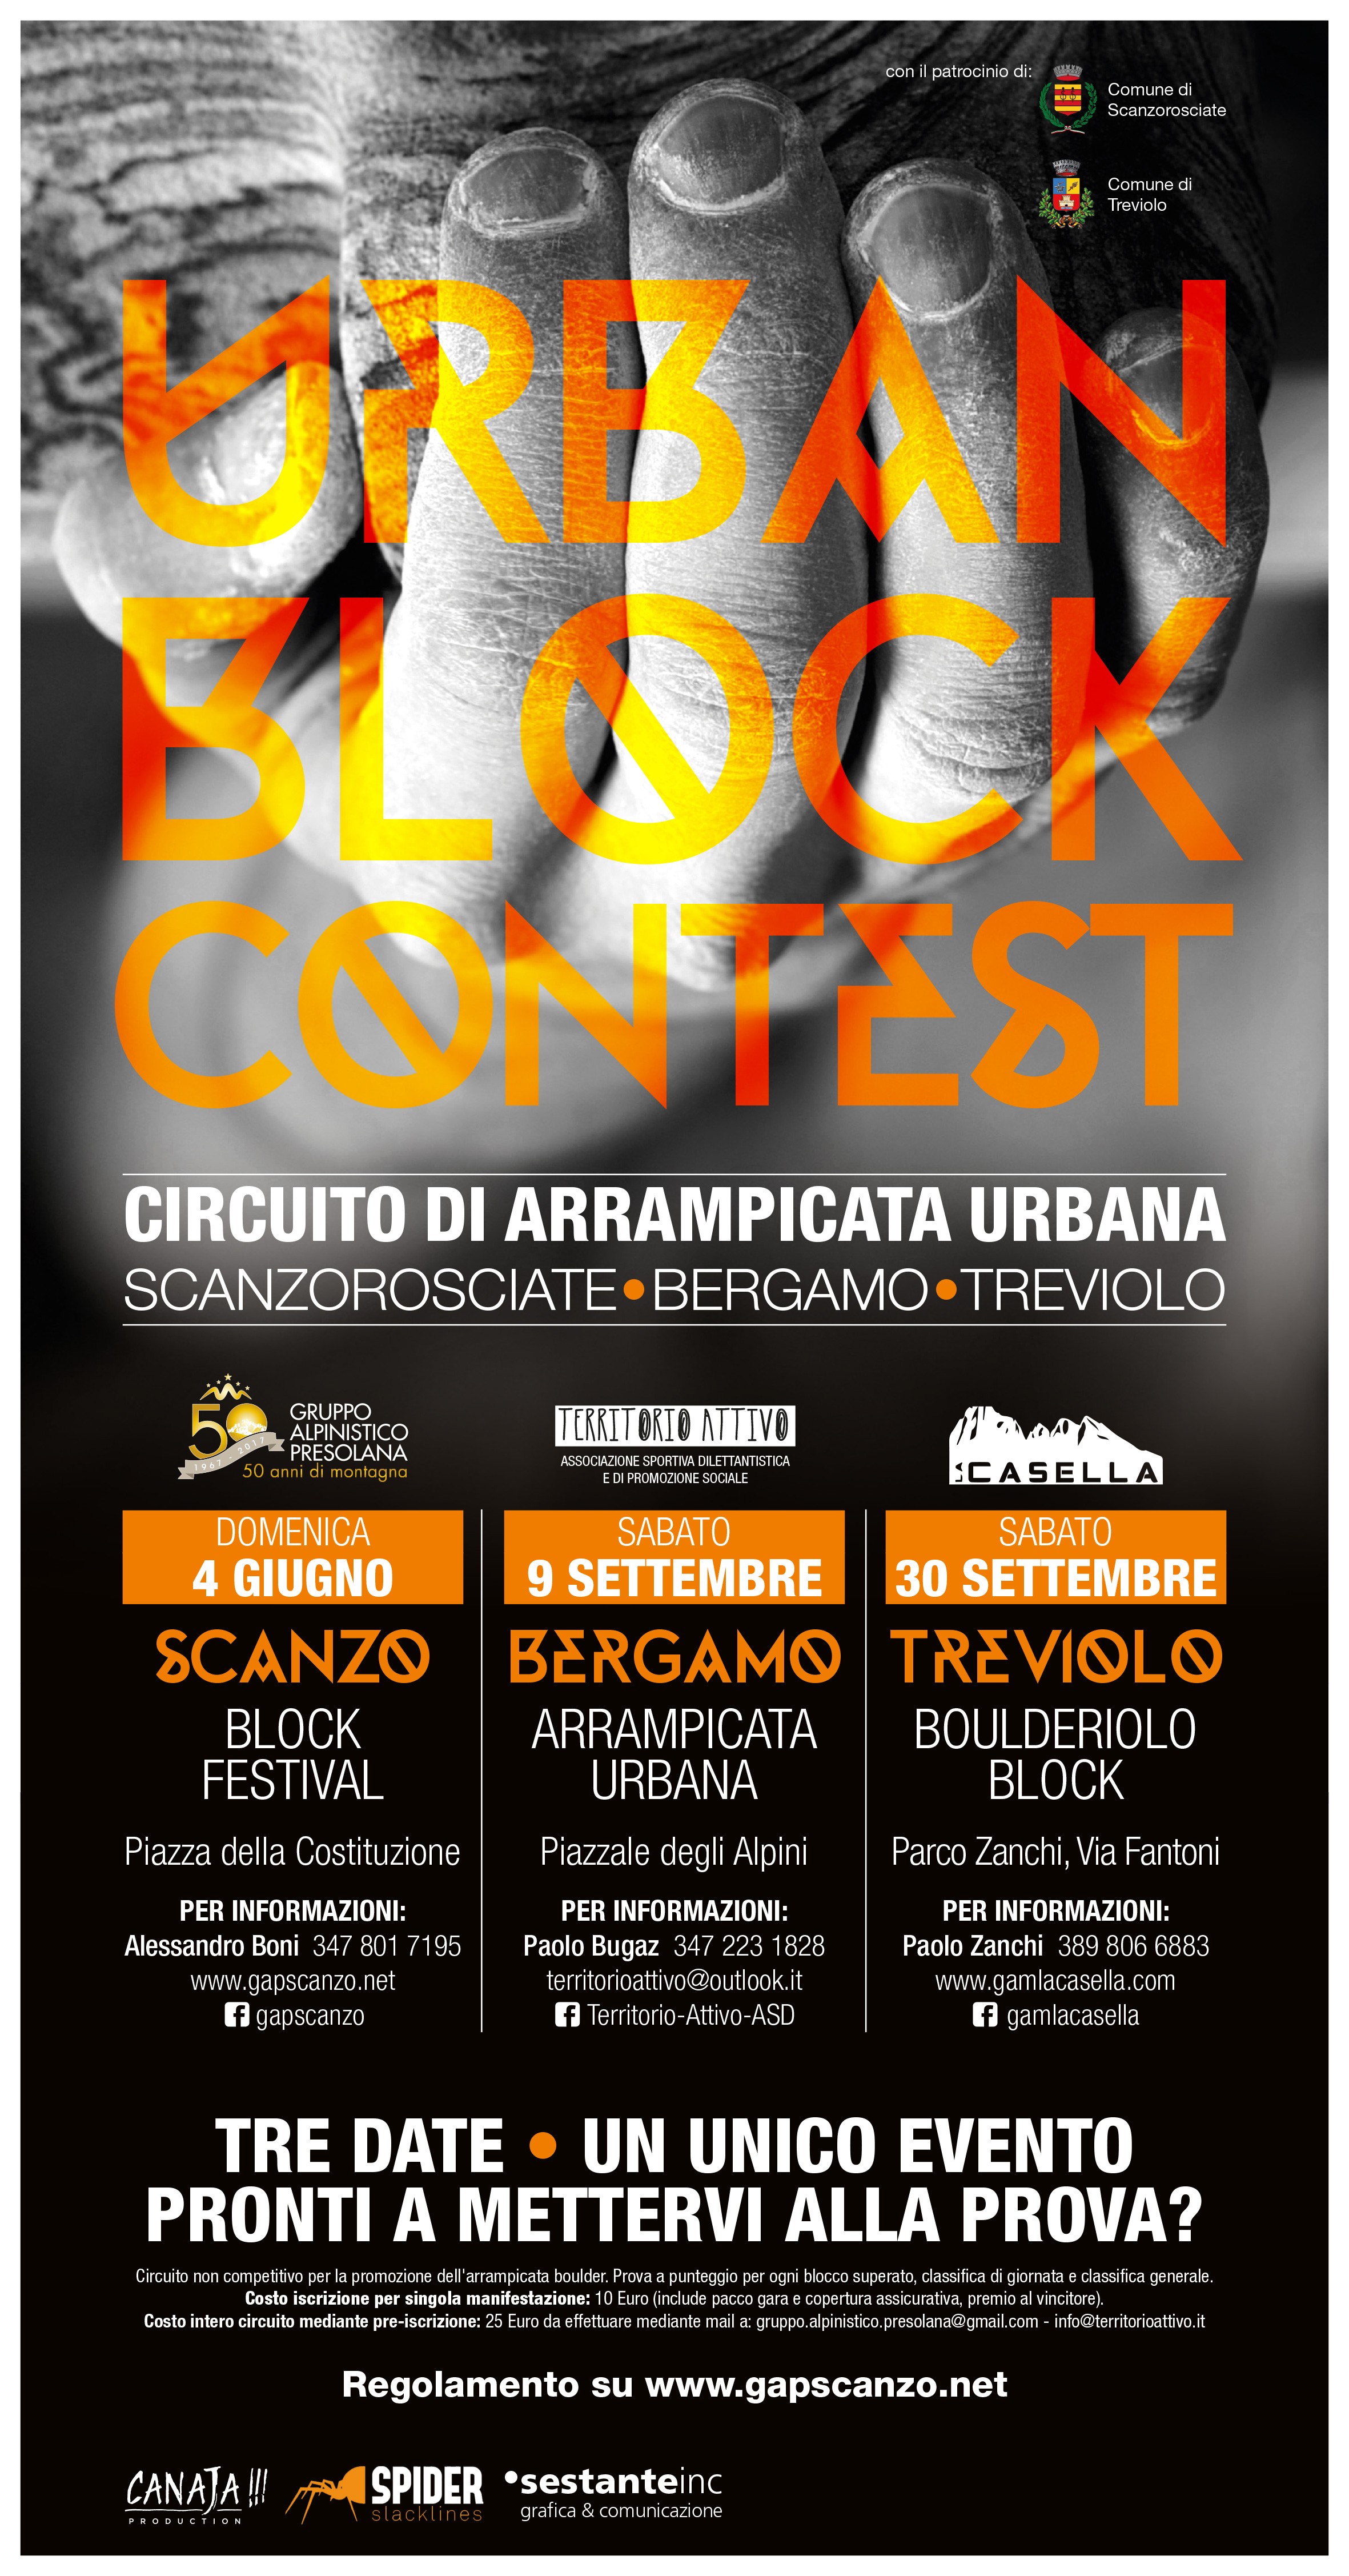 URBAN BLOCK CONTEST – Circuito di Arrampicata Urbana